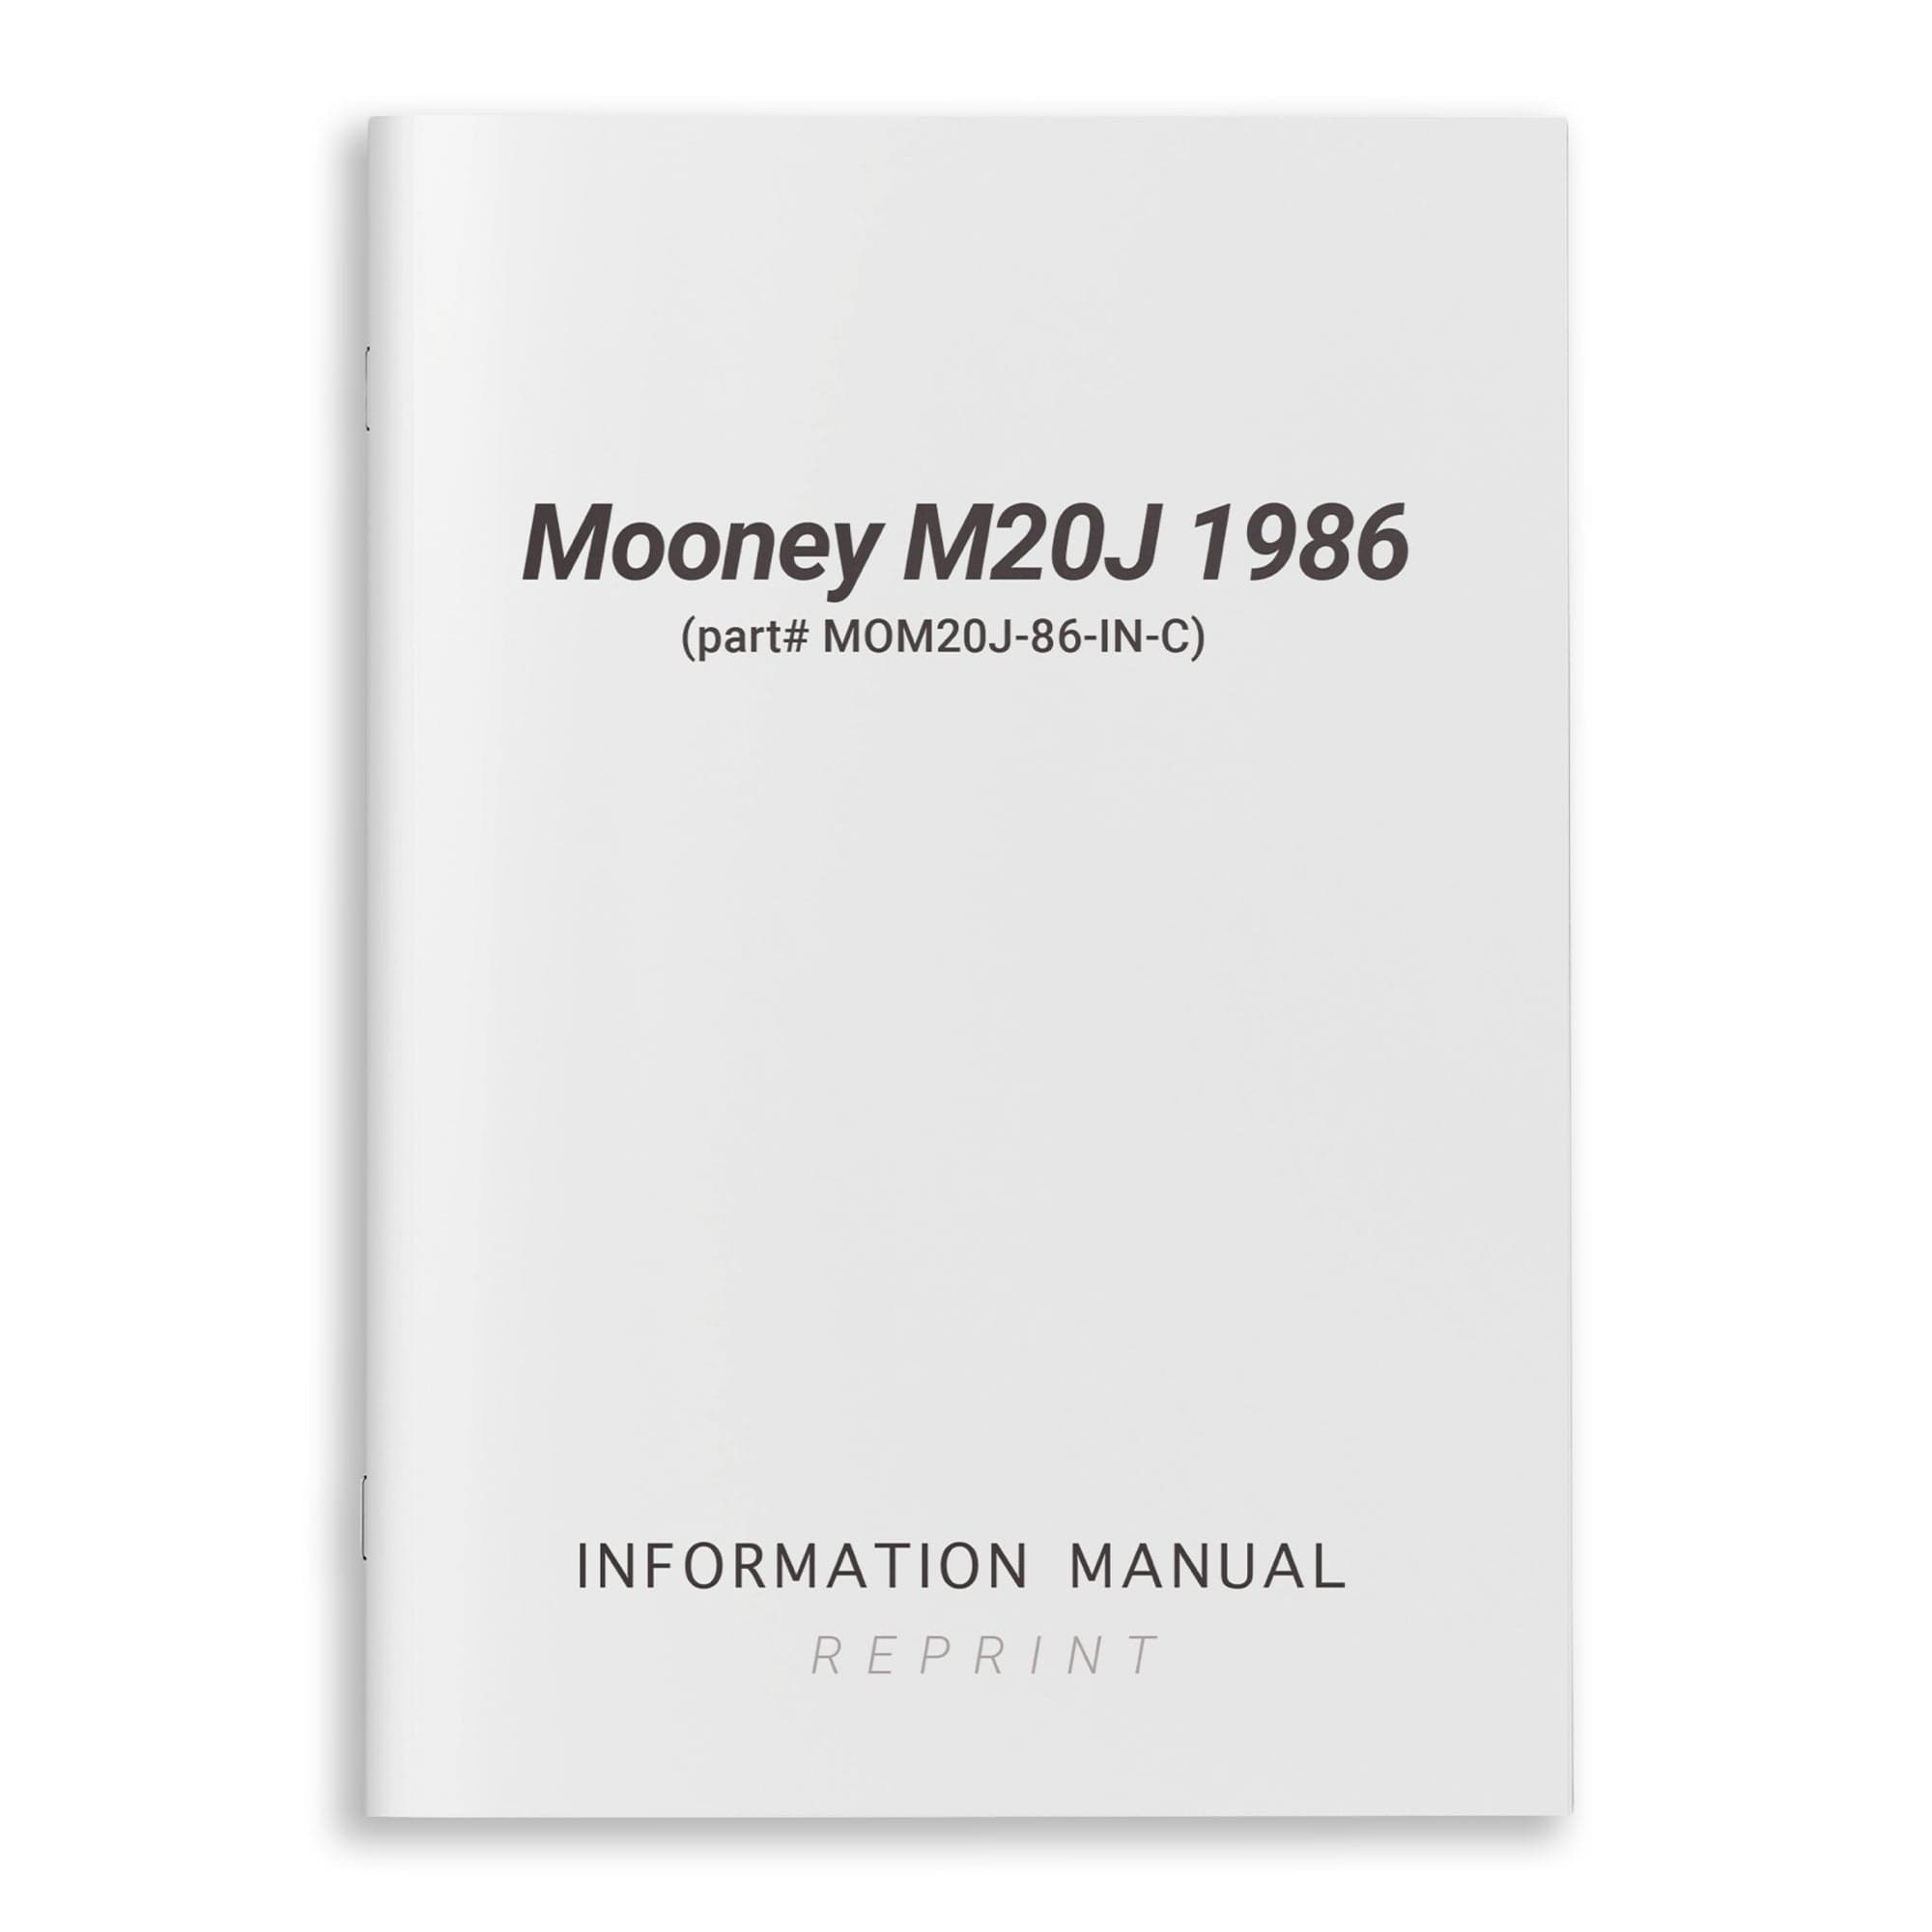 Mooney M20J 1986 Information Manual (part# MOM20J-86-IN-C) - PilotMall.com